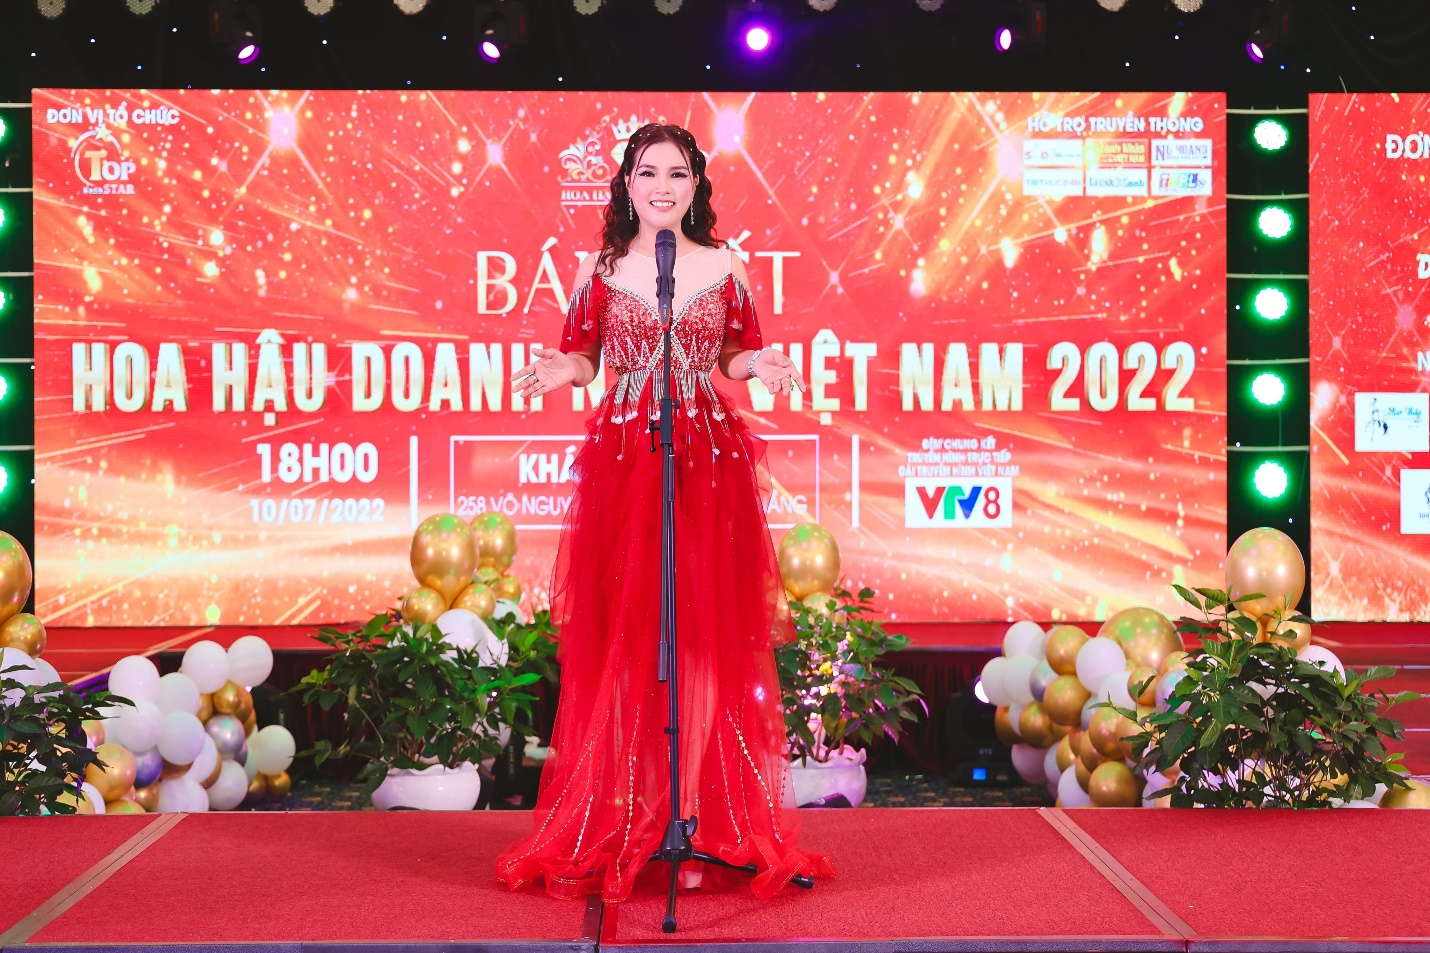 30 thí sinh vào đêm chung kết Hoa hậu Doanh nhân Việt Nam 2022 - 3